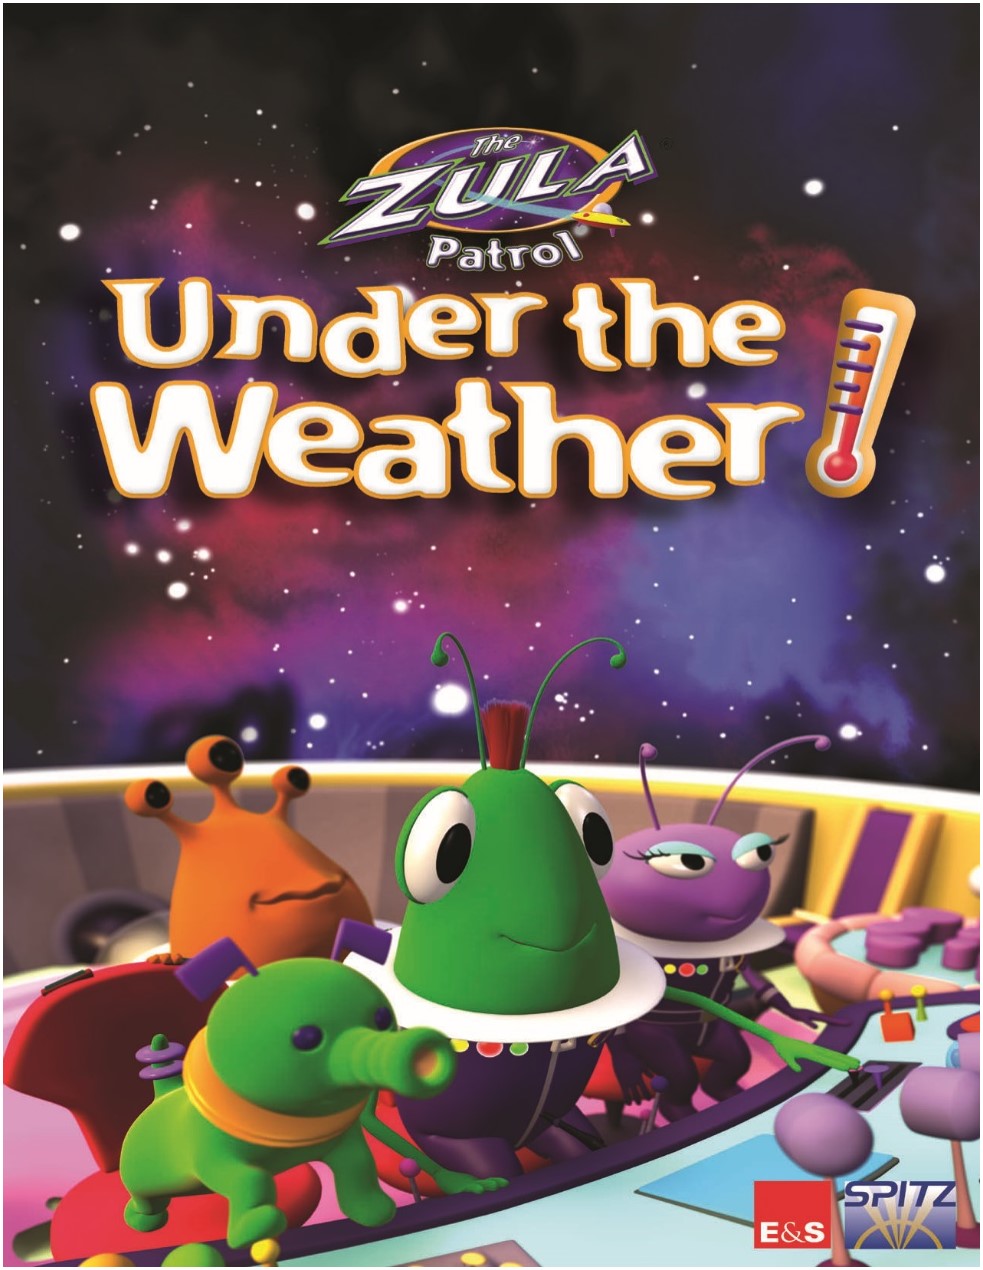 Planetarium: Zula Patrol Under the Weather